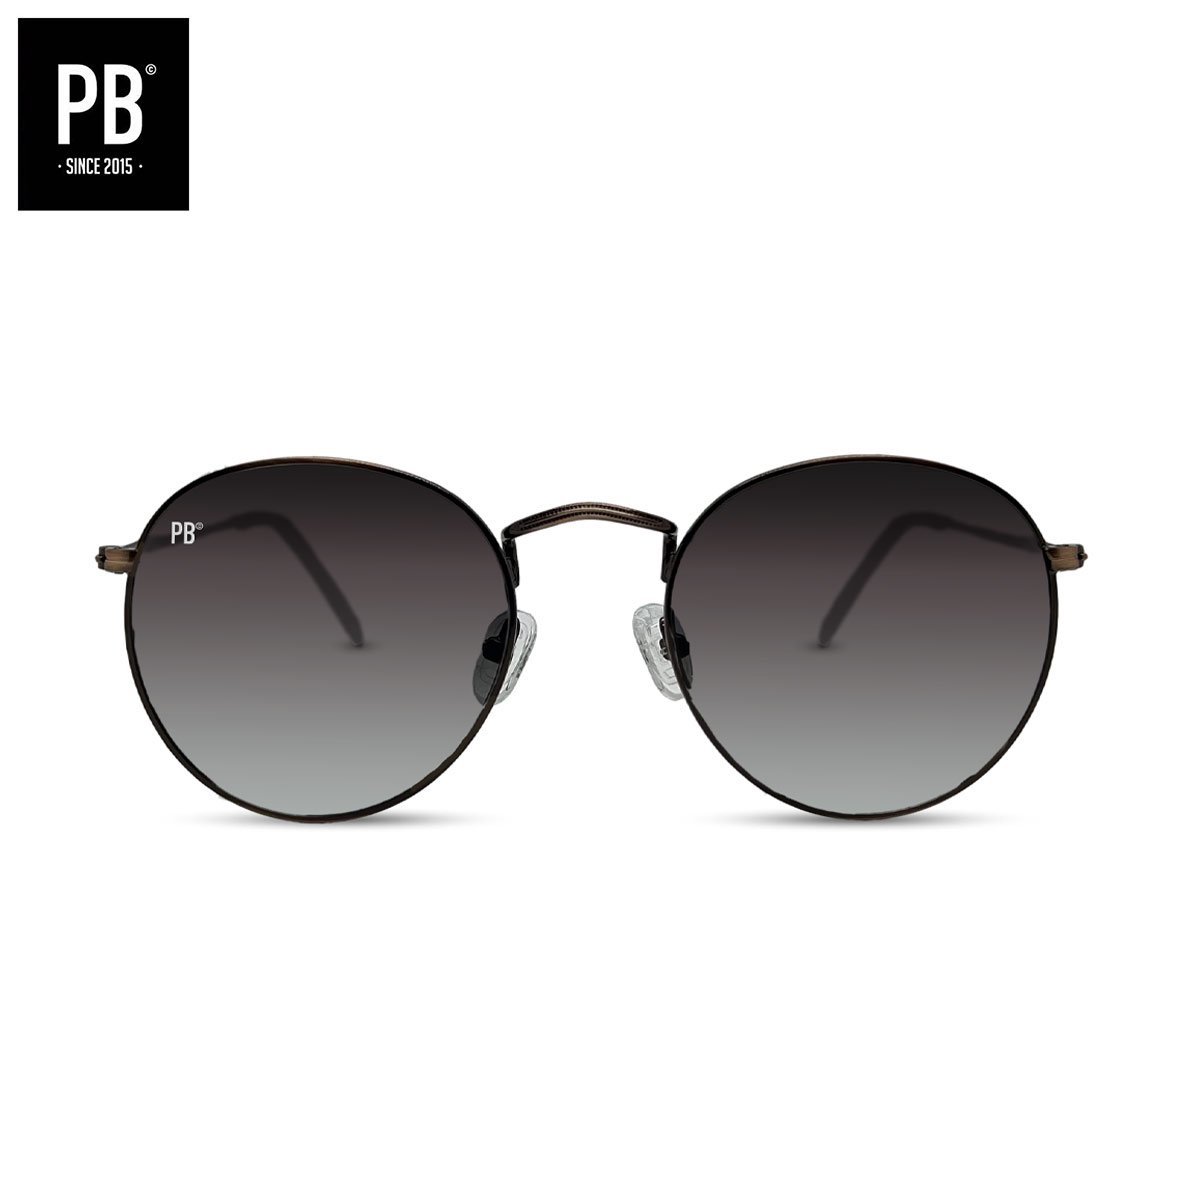 PB Sunglasses - Round Copper Gradient. - Zonnebril heren en dames - Gepolariseerd - Koperen metalen frame - Ronde stijl